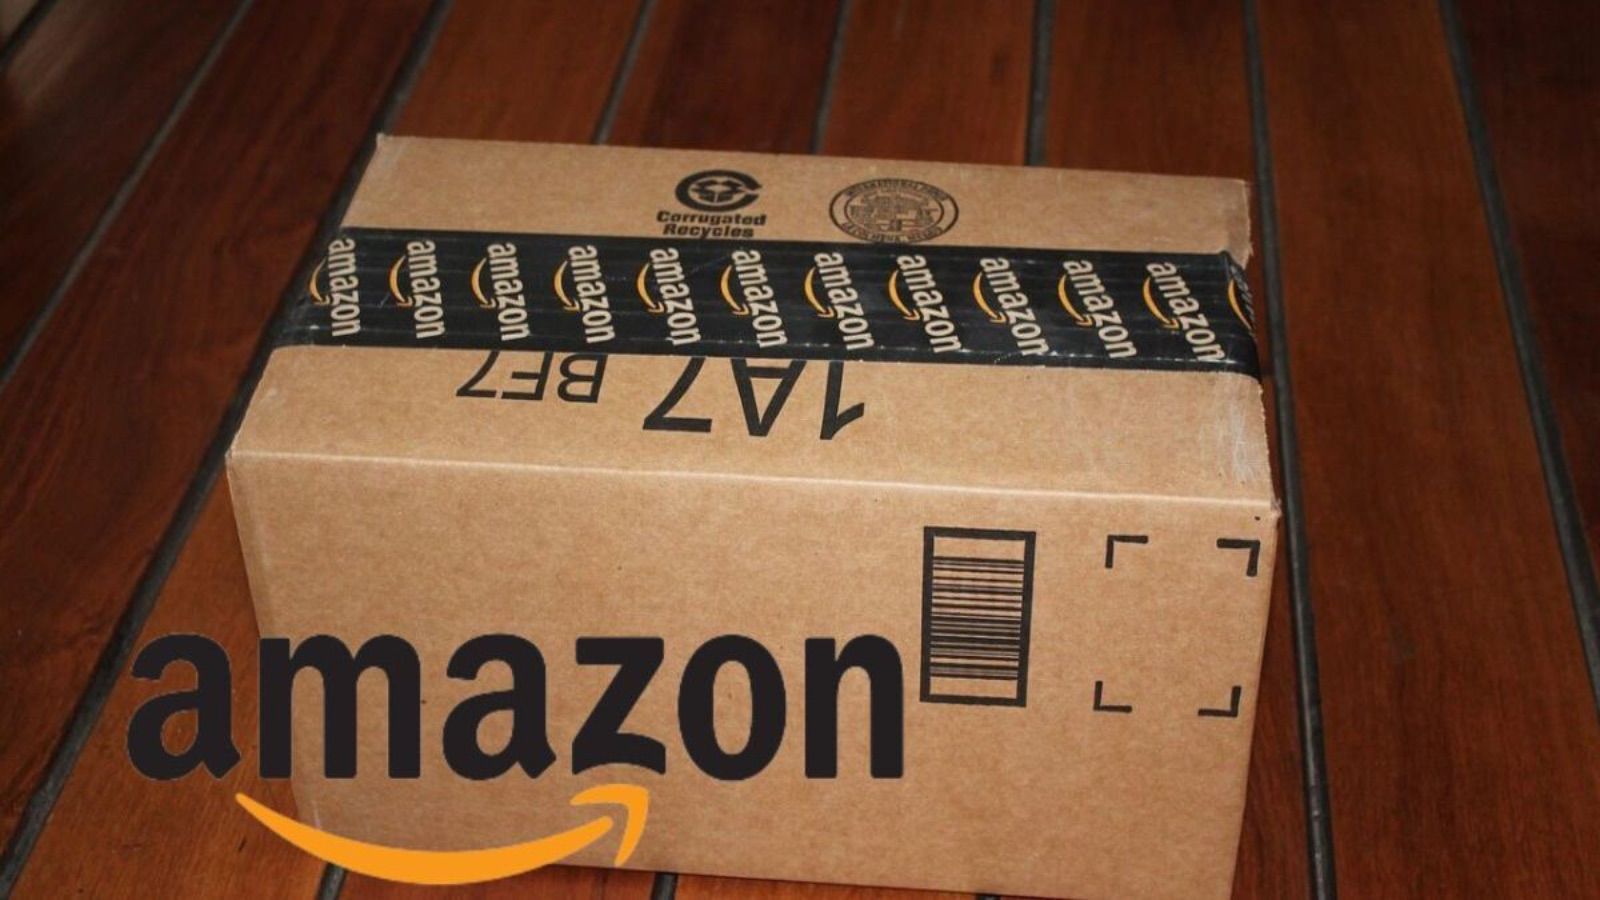 Amazon, super offerte PAZZE solo oggi nell'elenco segreto